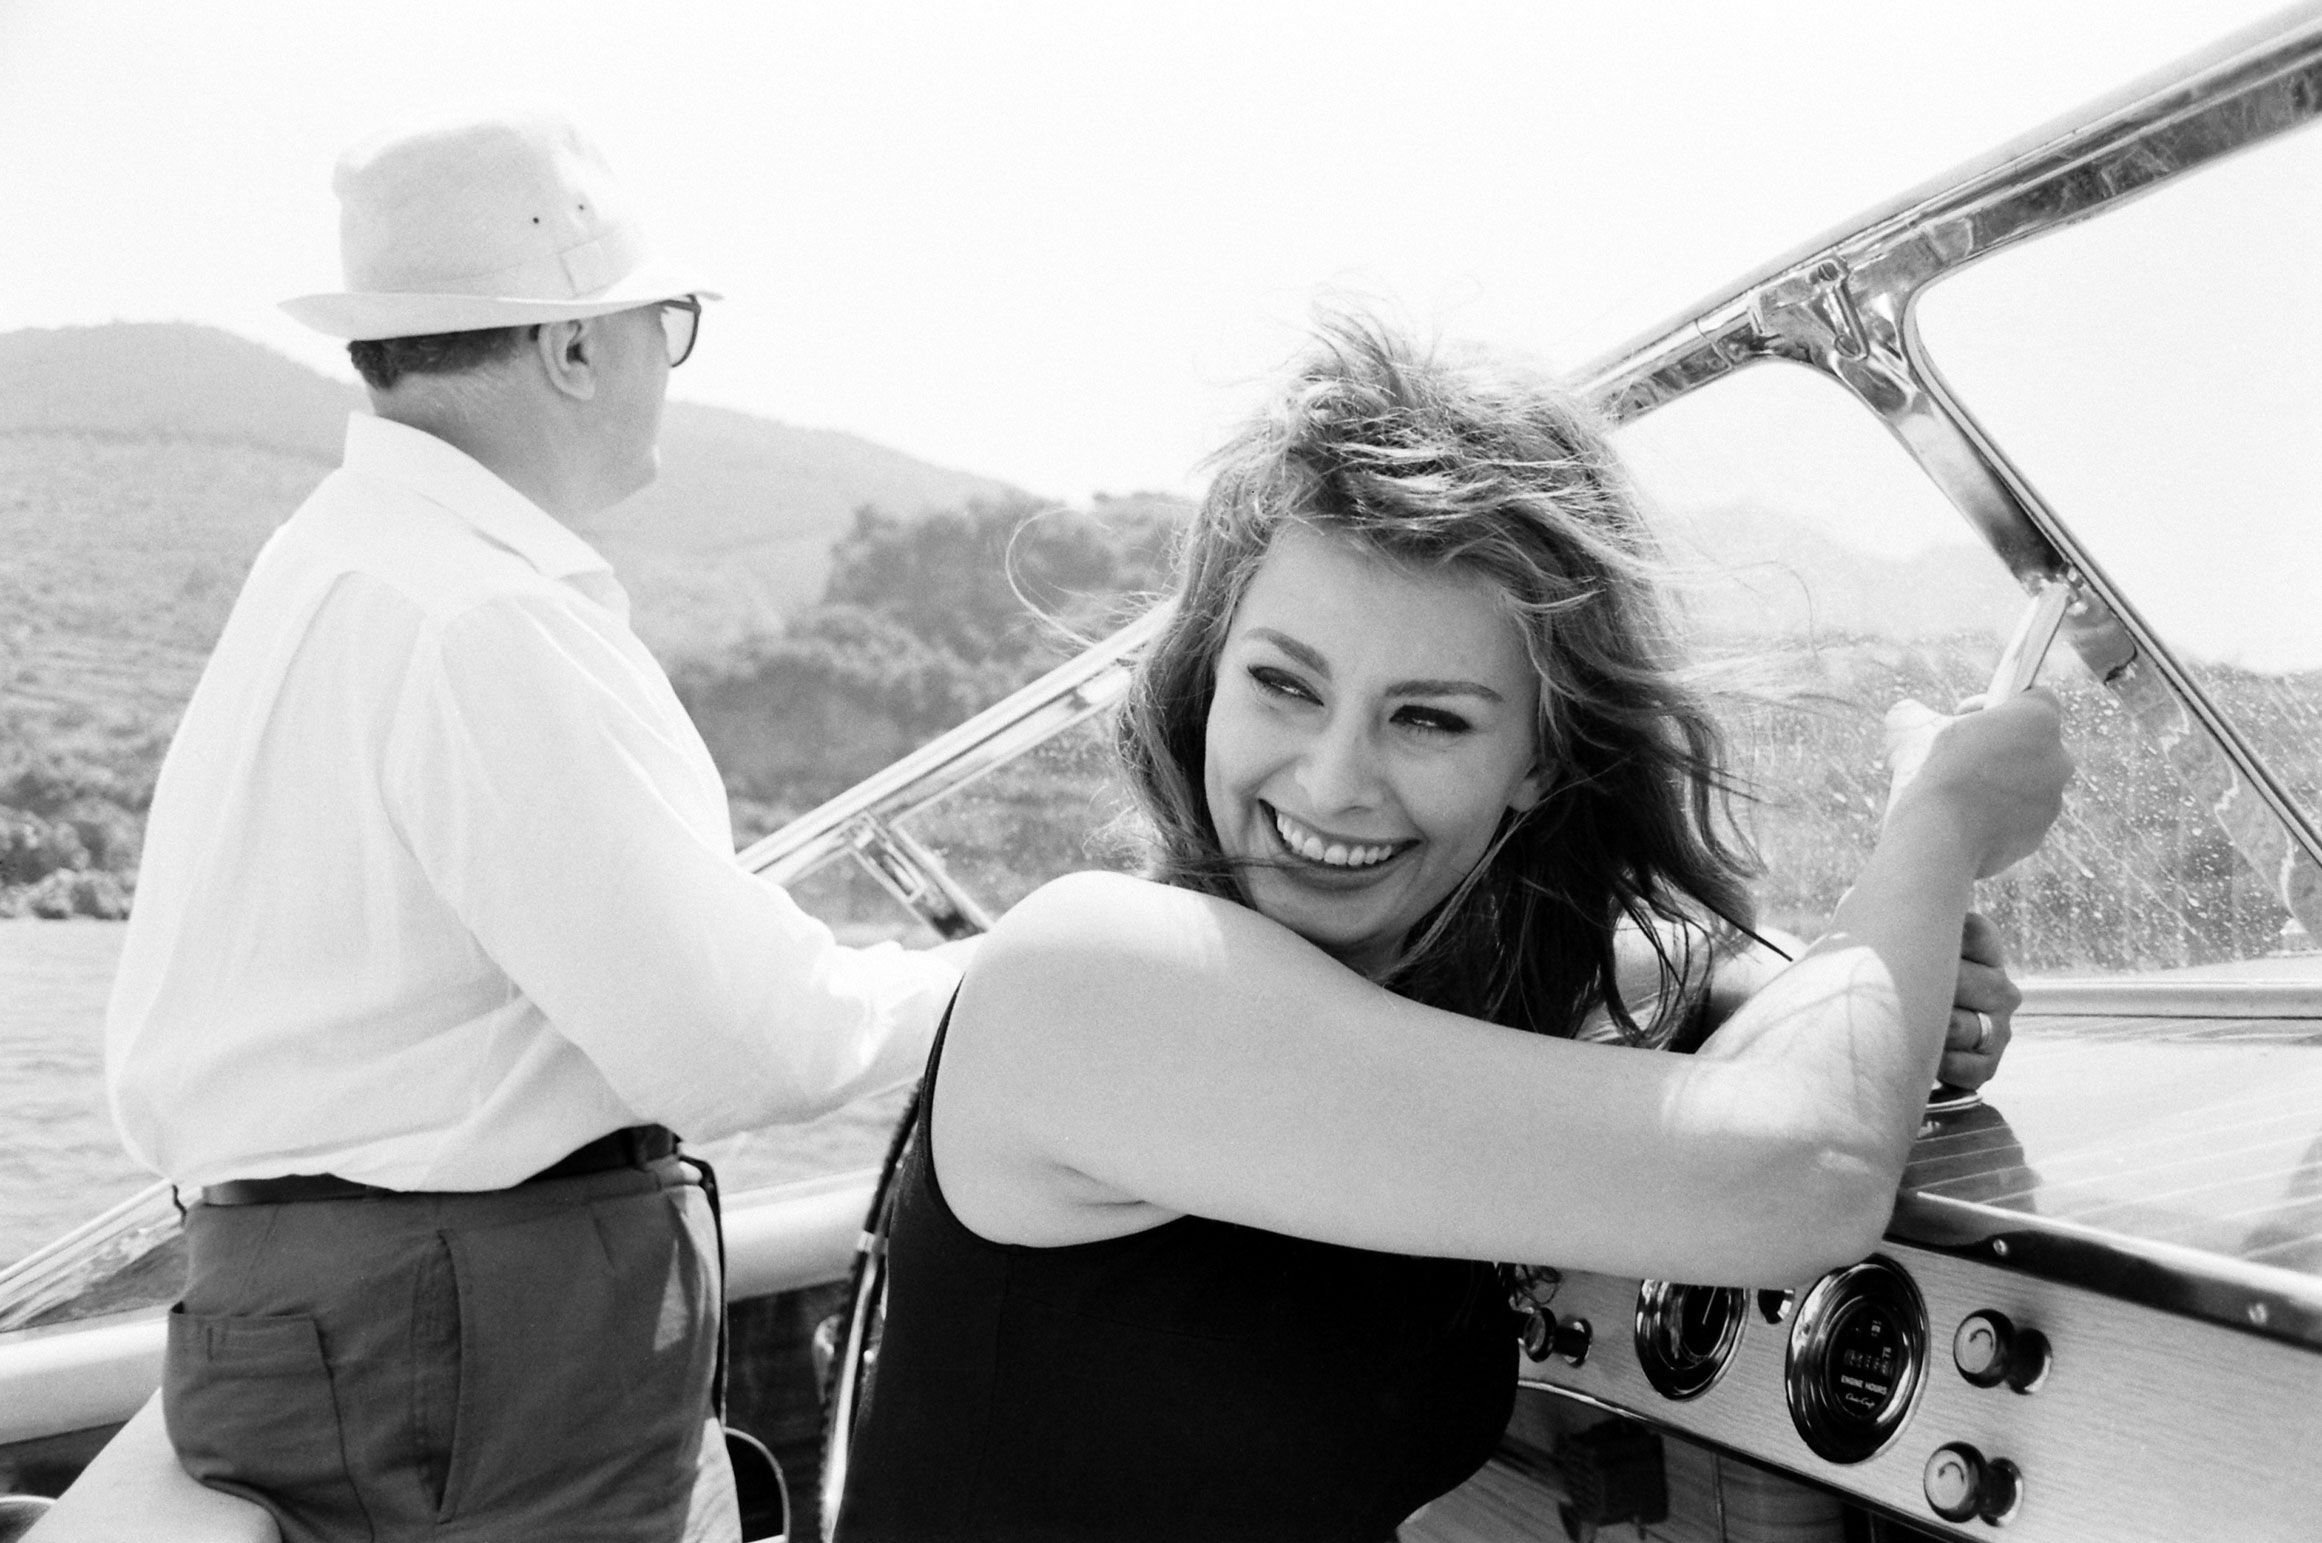 На белоснежной яхте: 20 винтажных фото Монро, Хепберн и других звезд в море